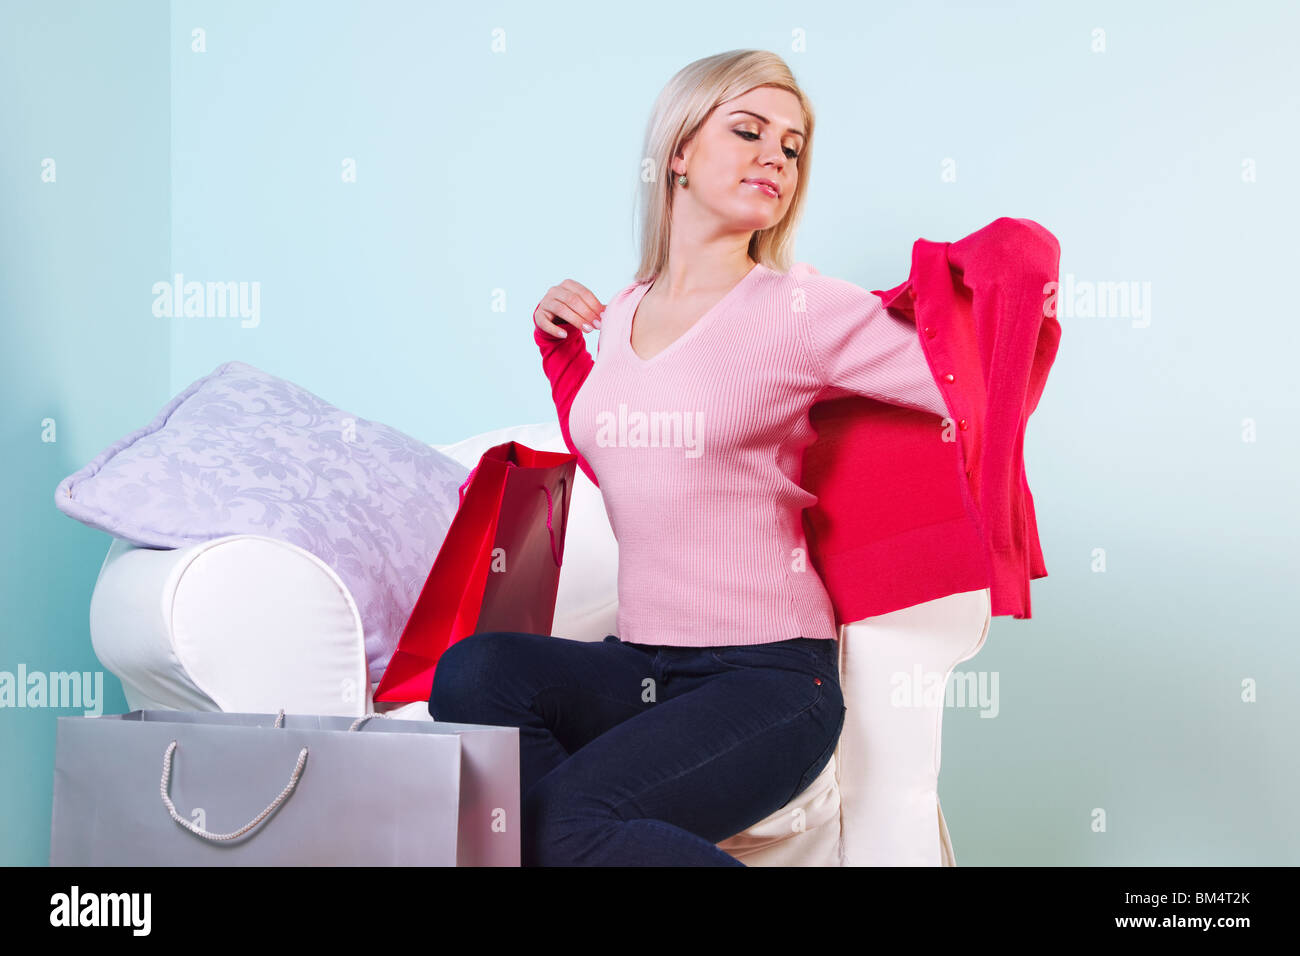 Un attraente donna bionda seduto in una sedia cercando su alcuni nuovi vestiti che ha appena acquistato. Foto Stock